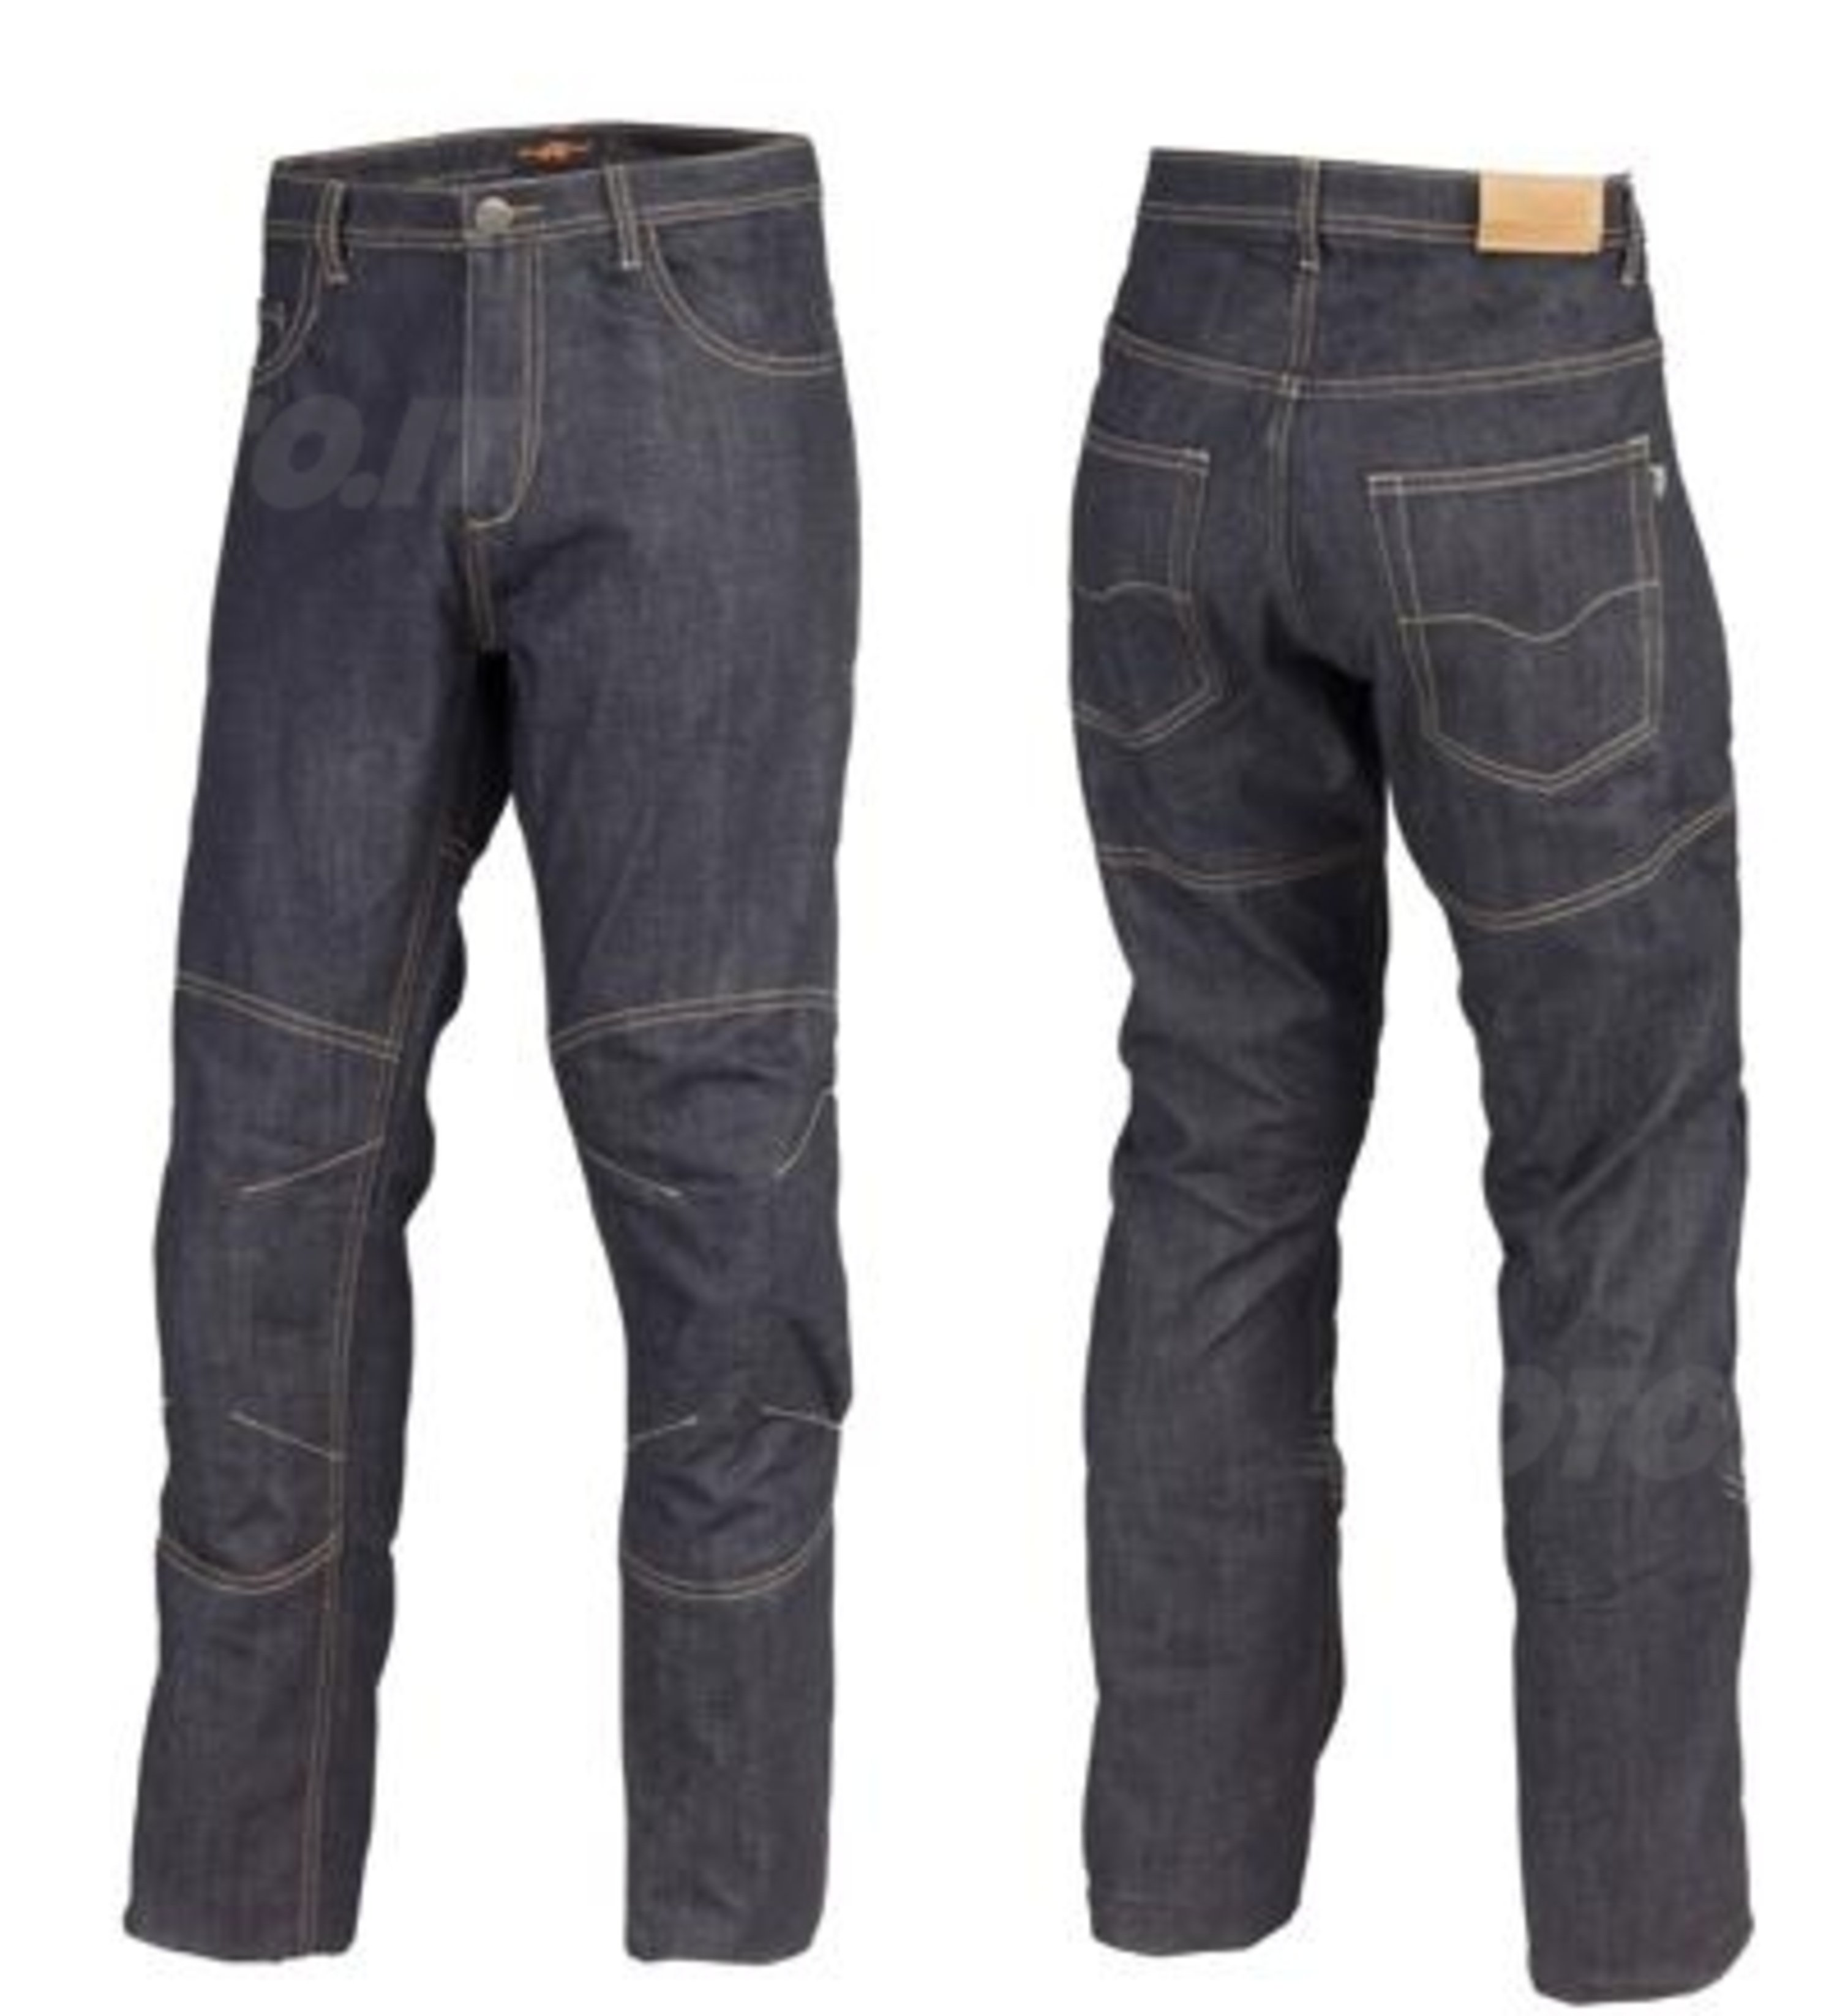 Kappamoto presenta Genoa, il nuovo jeans tecnico con protezioni, per lui e per lei